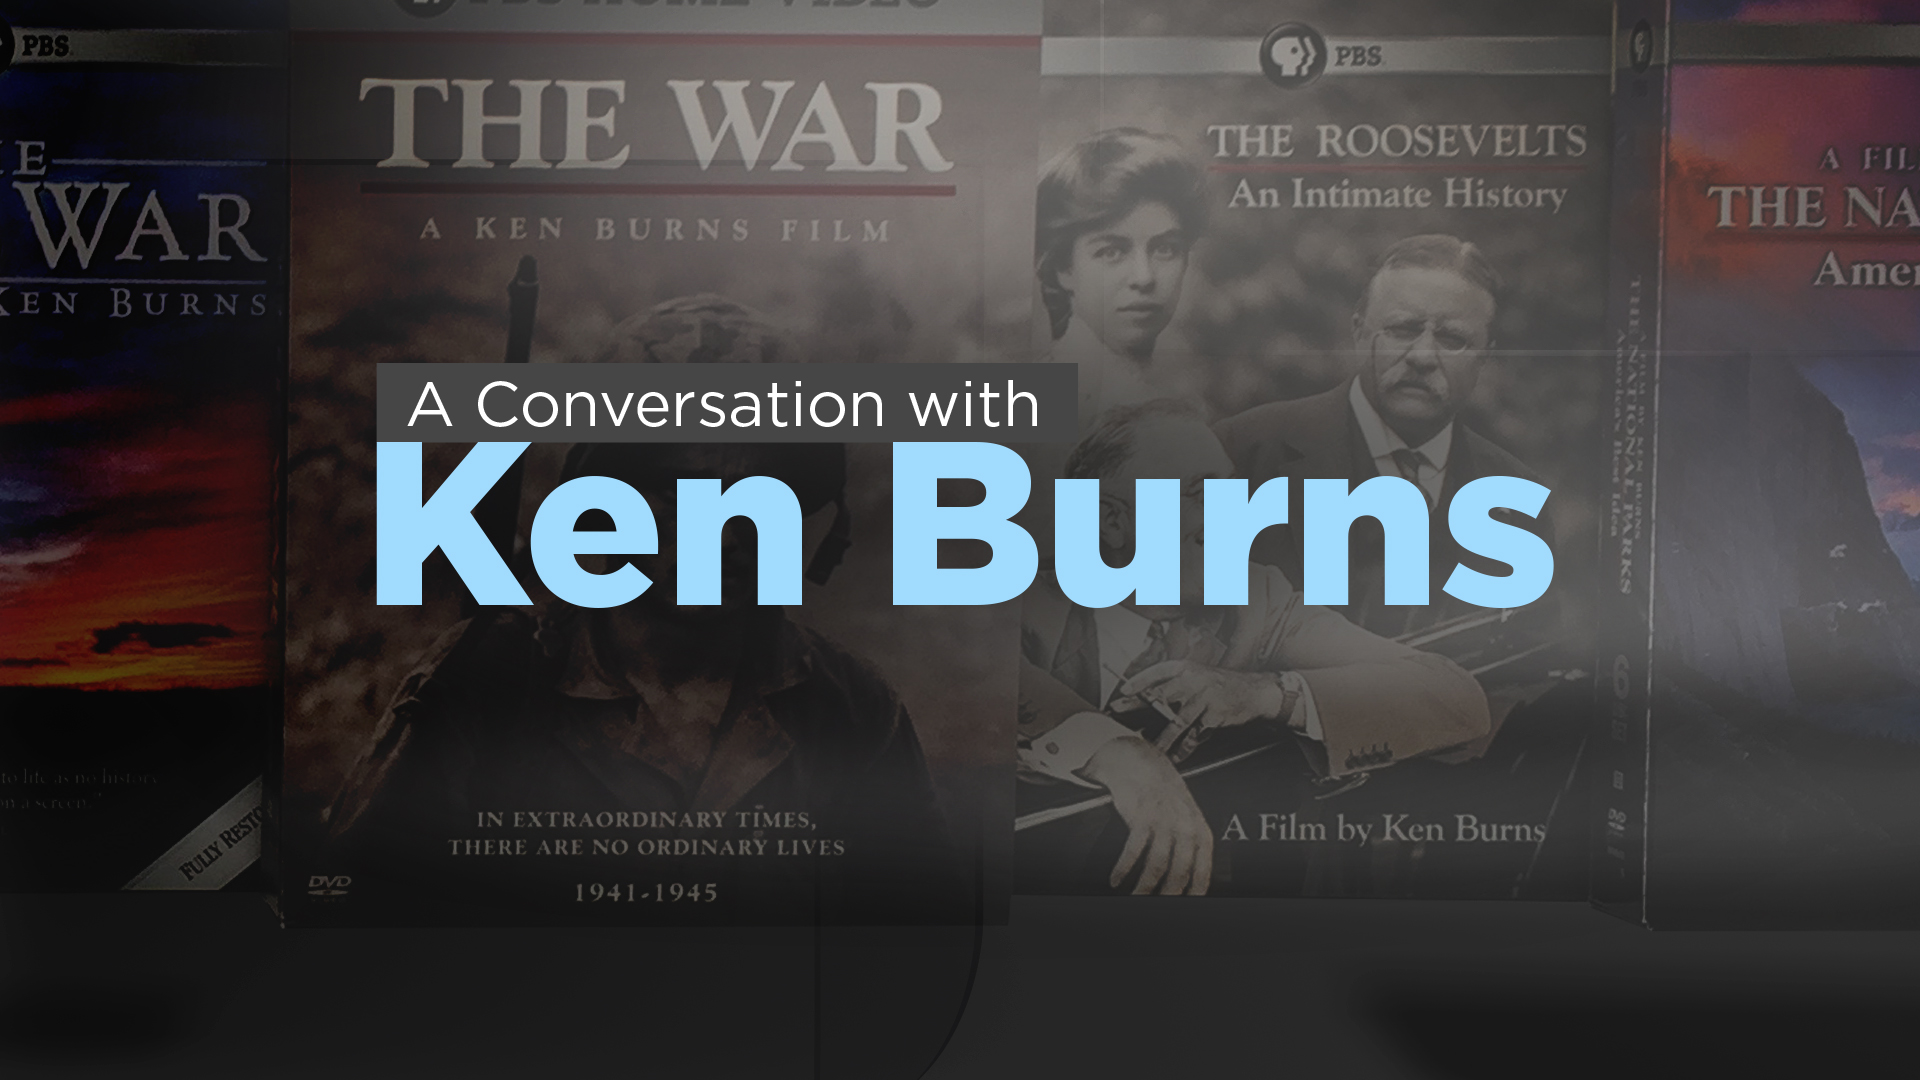 A conversation with Ken Burns